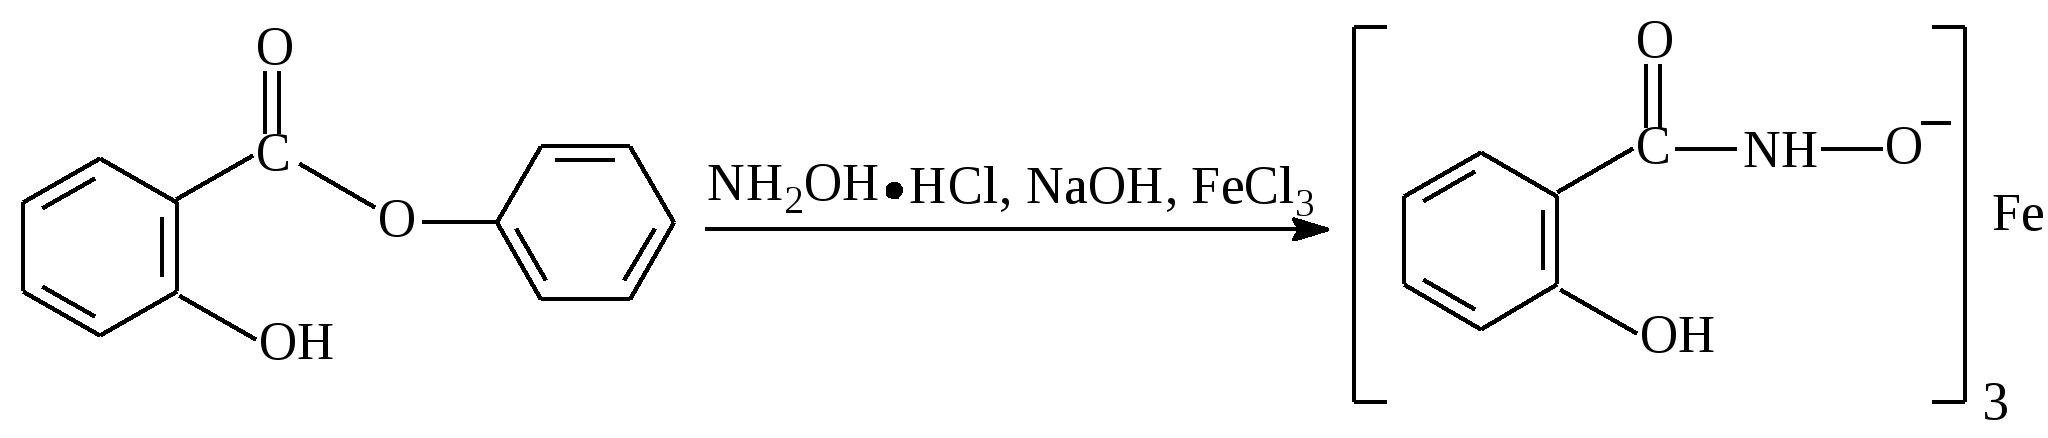 Бензойная кислота этилбензоат. Аминобензойная кислота NAOH. П-аминобензойная кислота формула. Диссоциация бензойной кислоты. Метиловый эфир 4 аминобензойной кислоты.